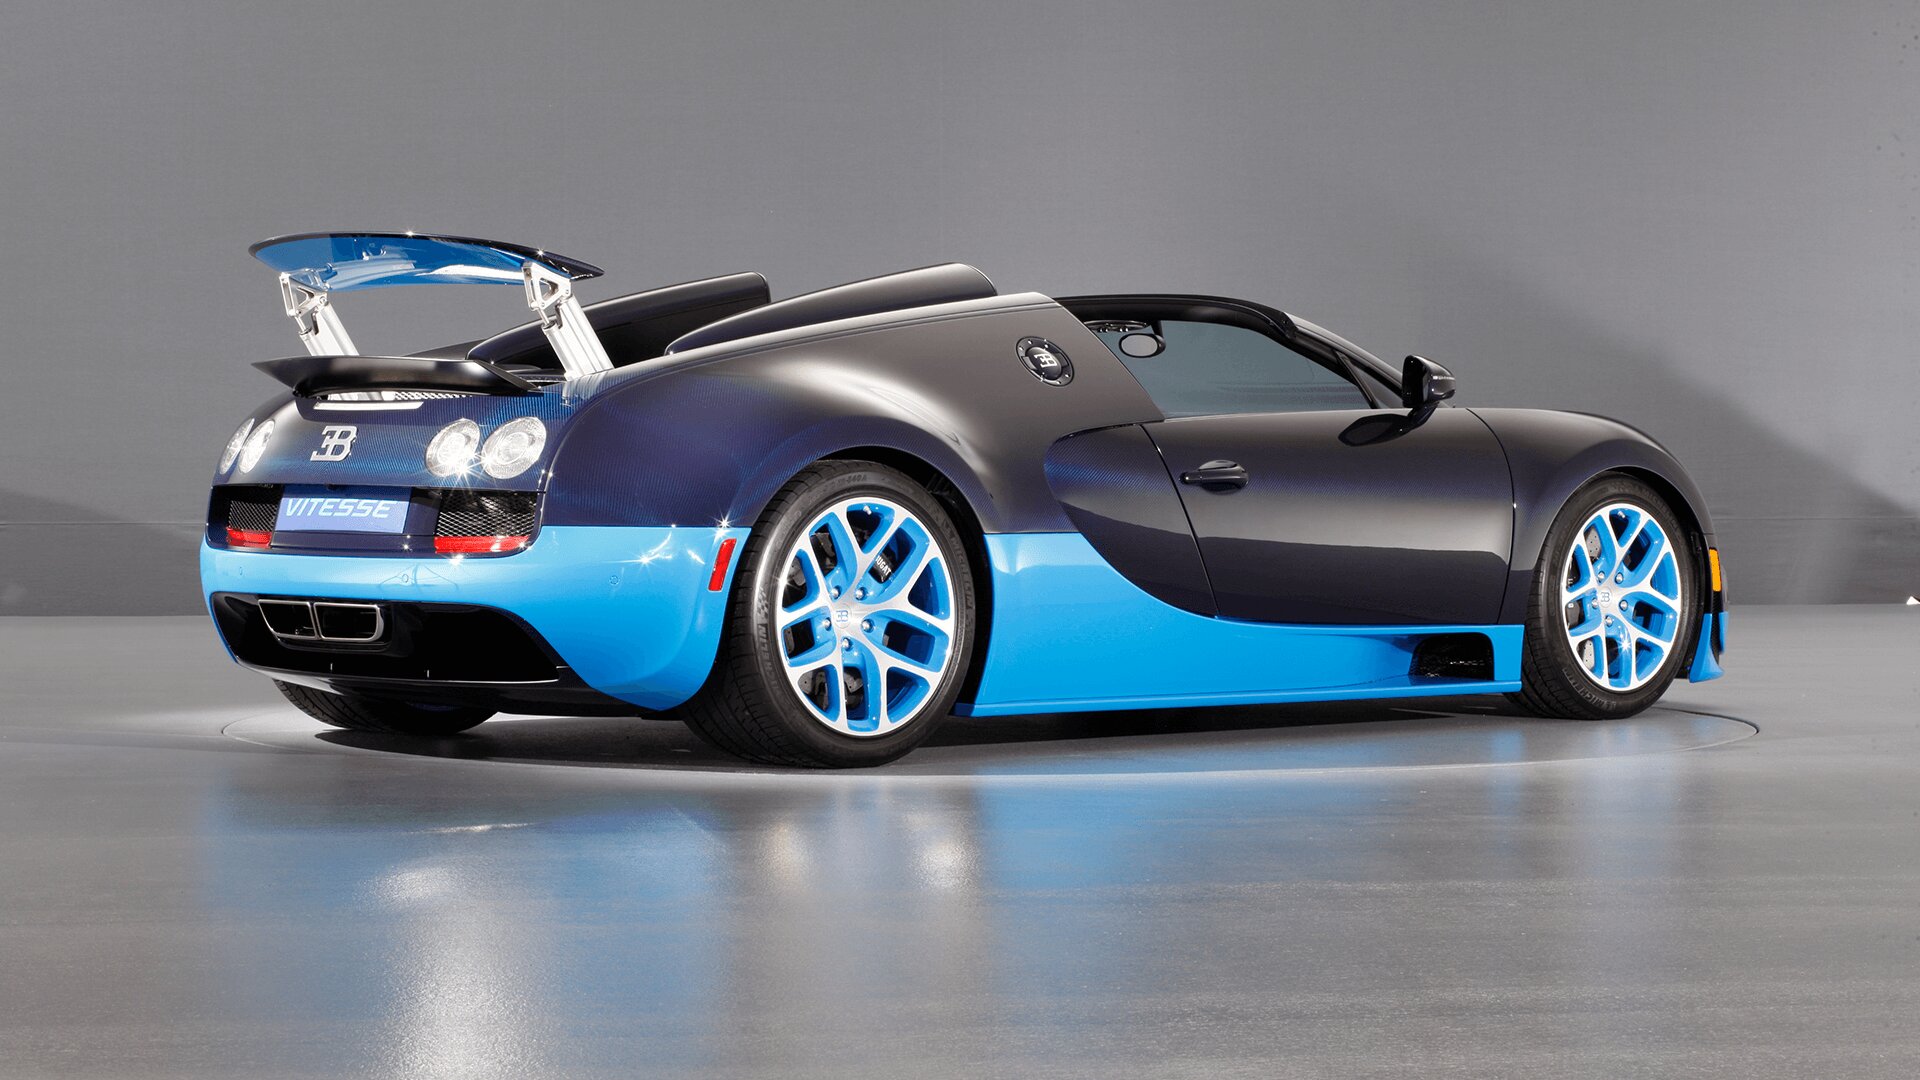 La Bugatti Veyron 16.4 élue voiture la plus rapide en 2013.